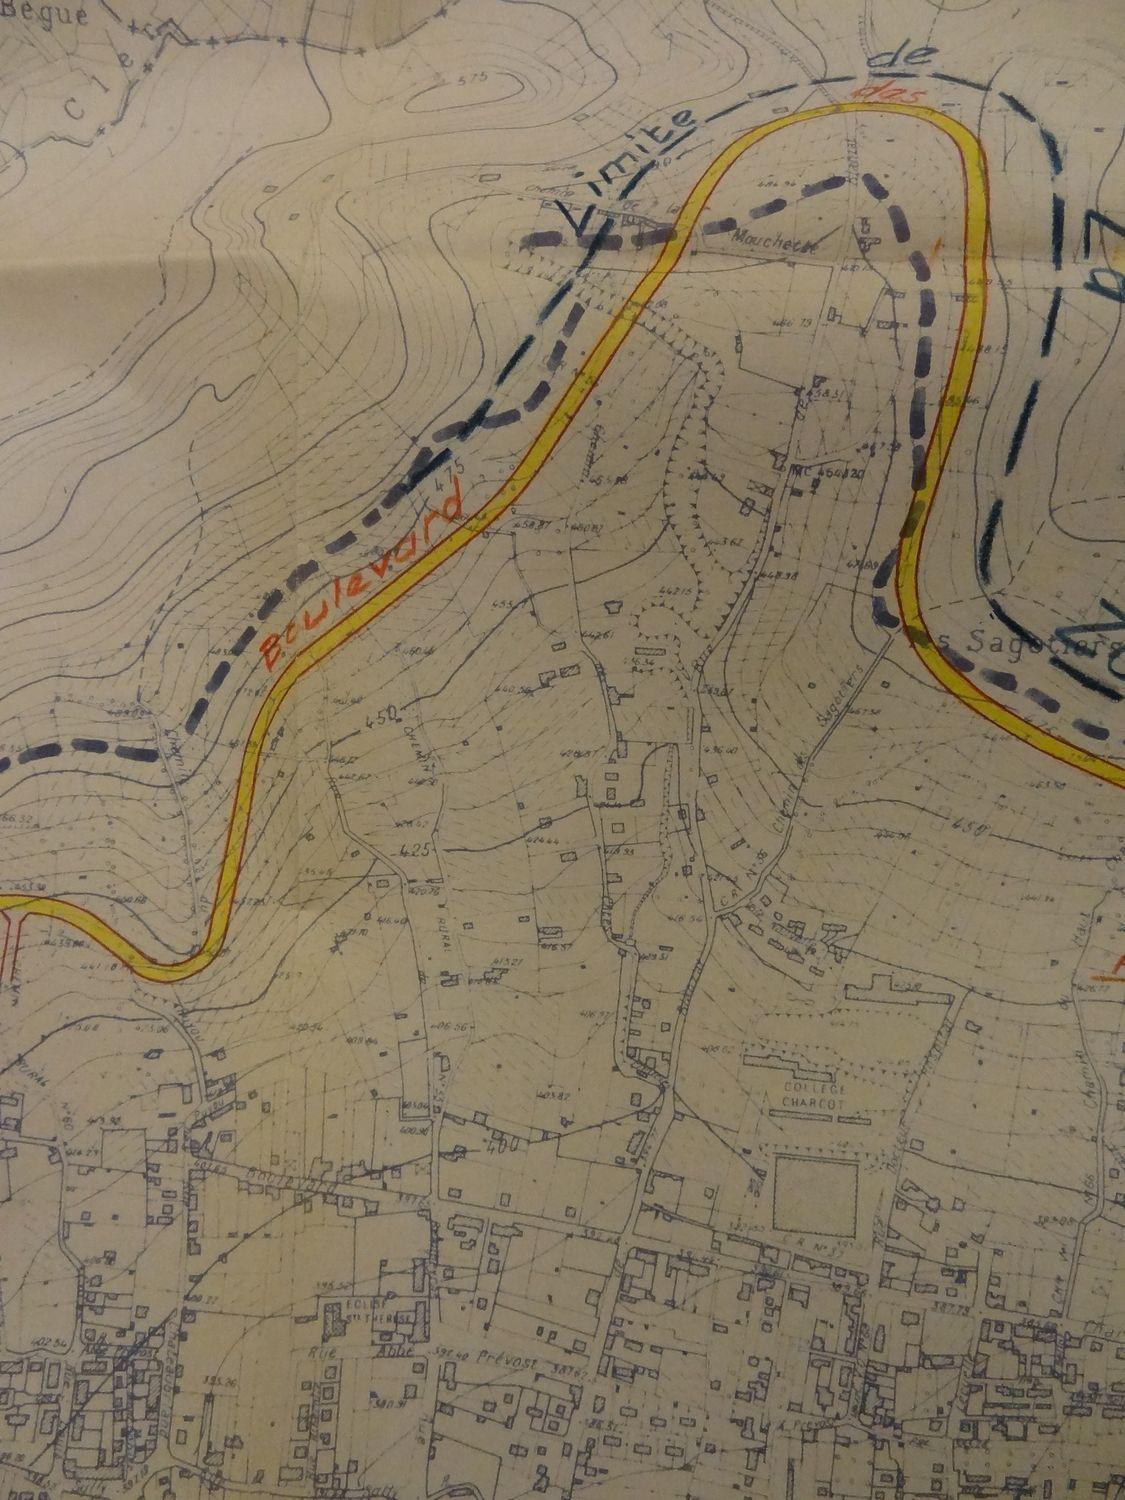 Plan de modification du PUD, où l'on voit, au centre, le "collège Charcot" (avant agrandissement) et en contre-haut, le boulevard des Côtes tel que projeté en 1971, mais pas réalisé. La limite indiquée en tireté noir est celle de "la zone à boiser".